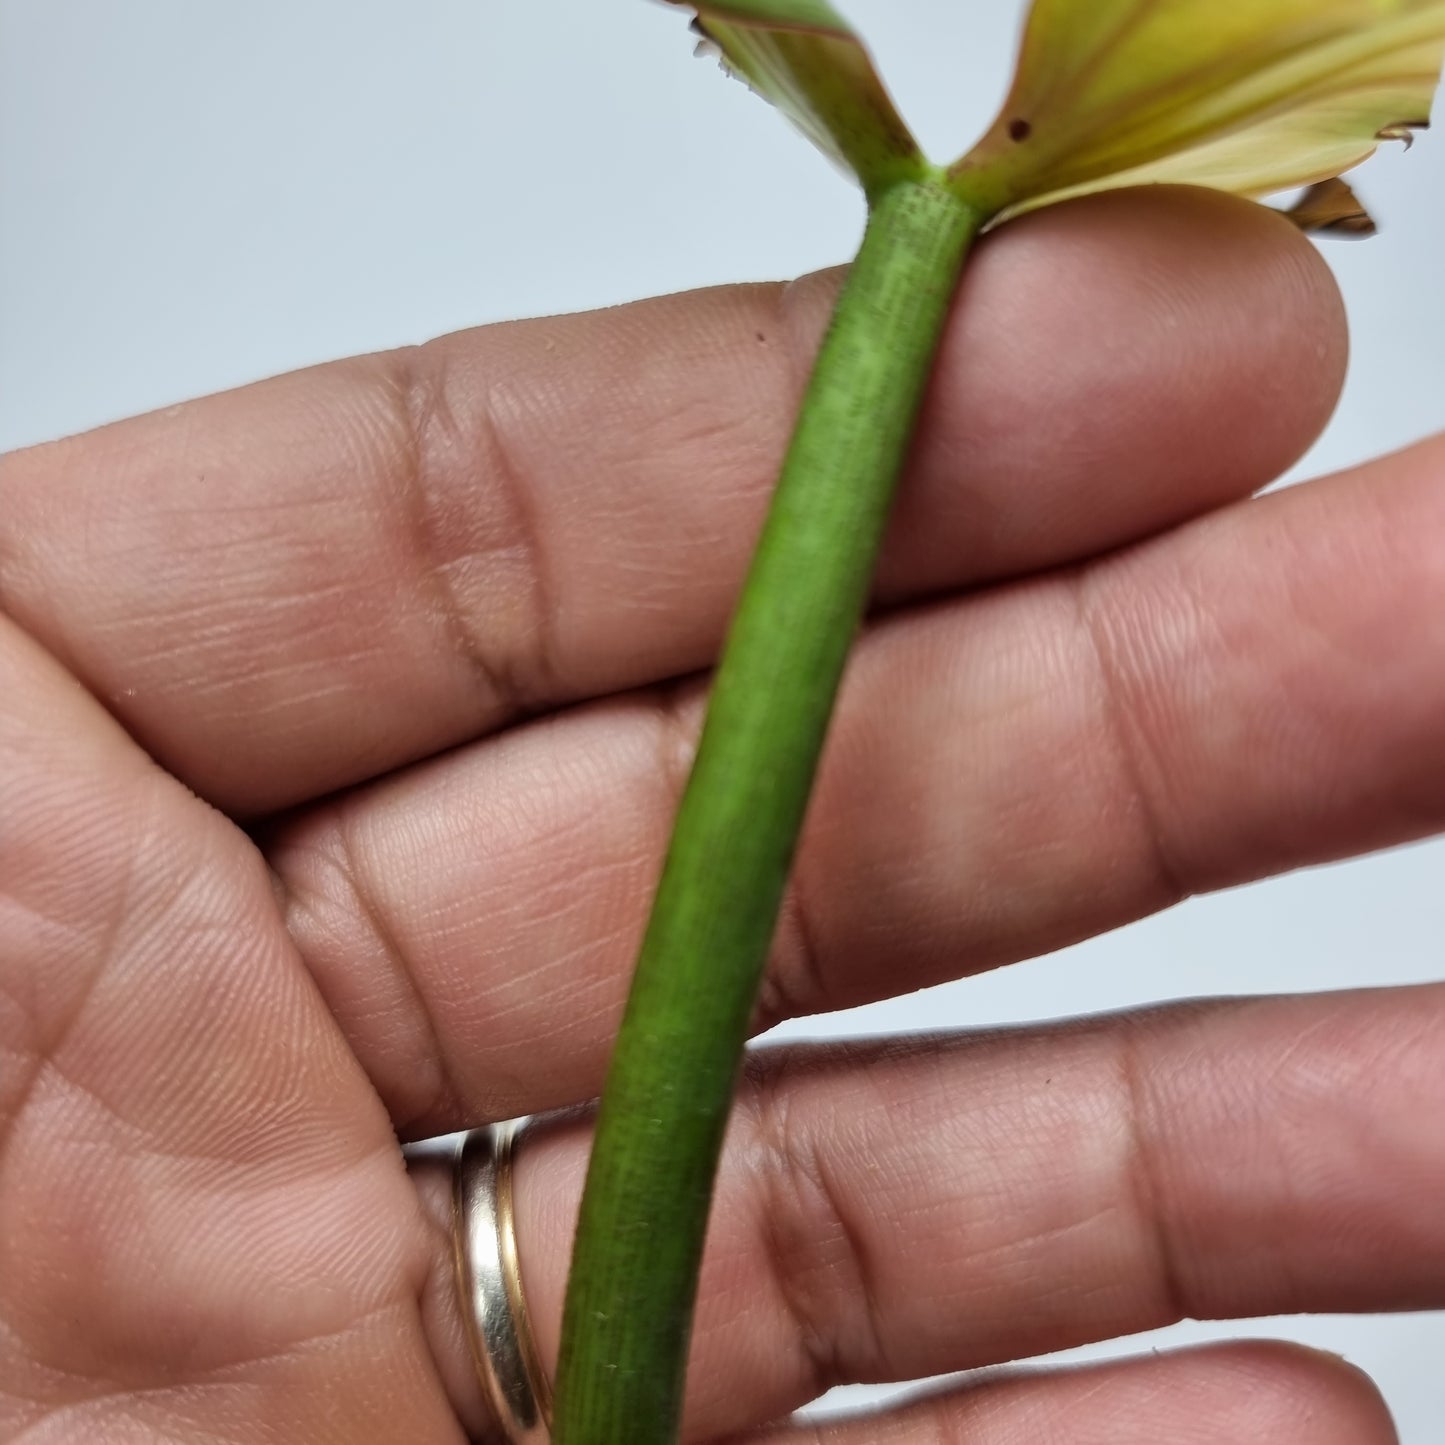 rare Philodendron sp Columbia 'El Guapo' for sale in Perth Australia